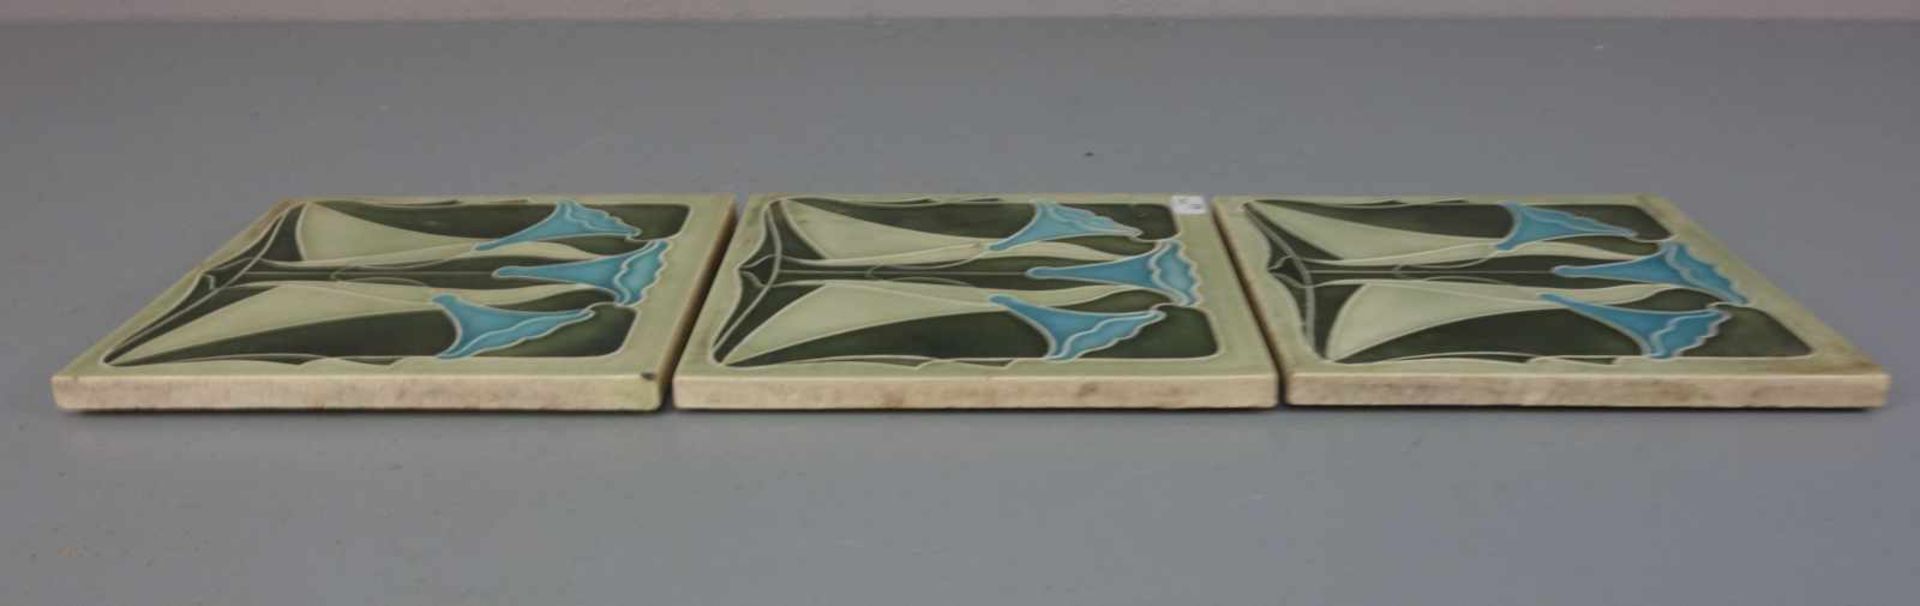 3 JUGENDSTILFLIESEN / art nouveau tiles, heller Scherben, um 1900, dreifarbig glasiert mit - Image 4 of 7